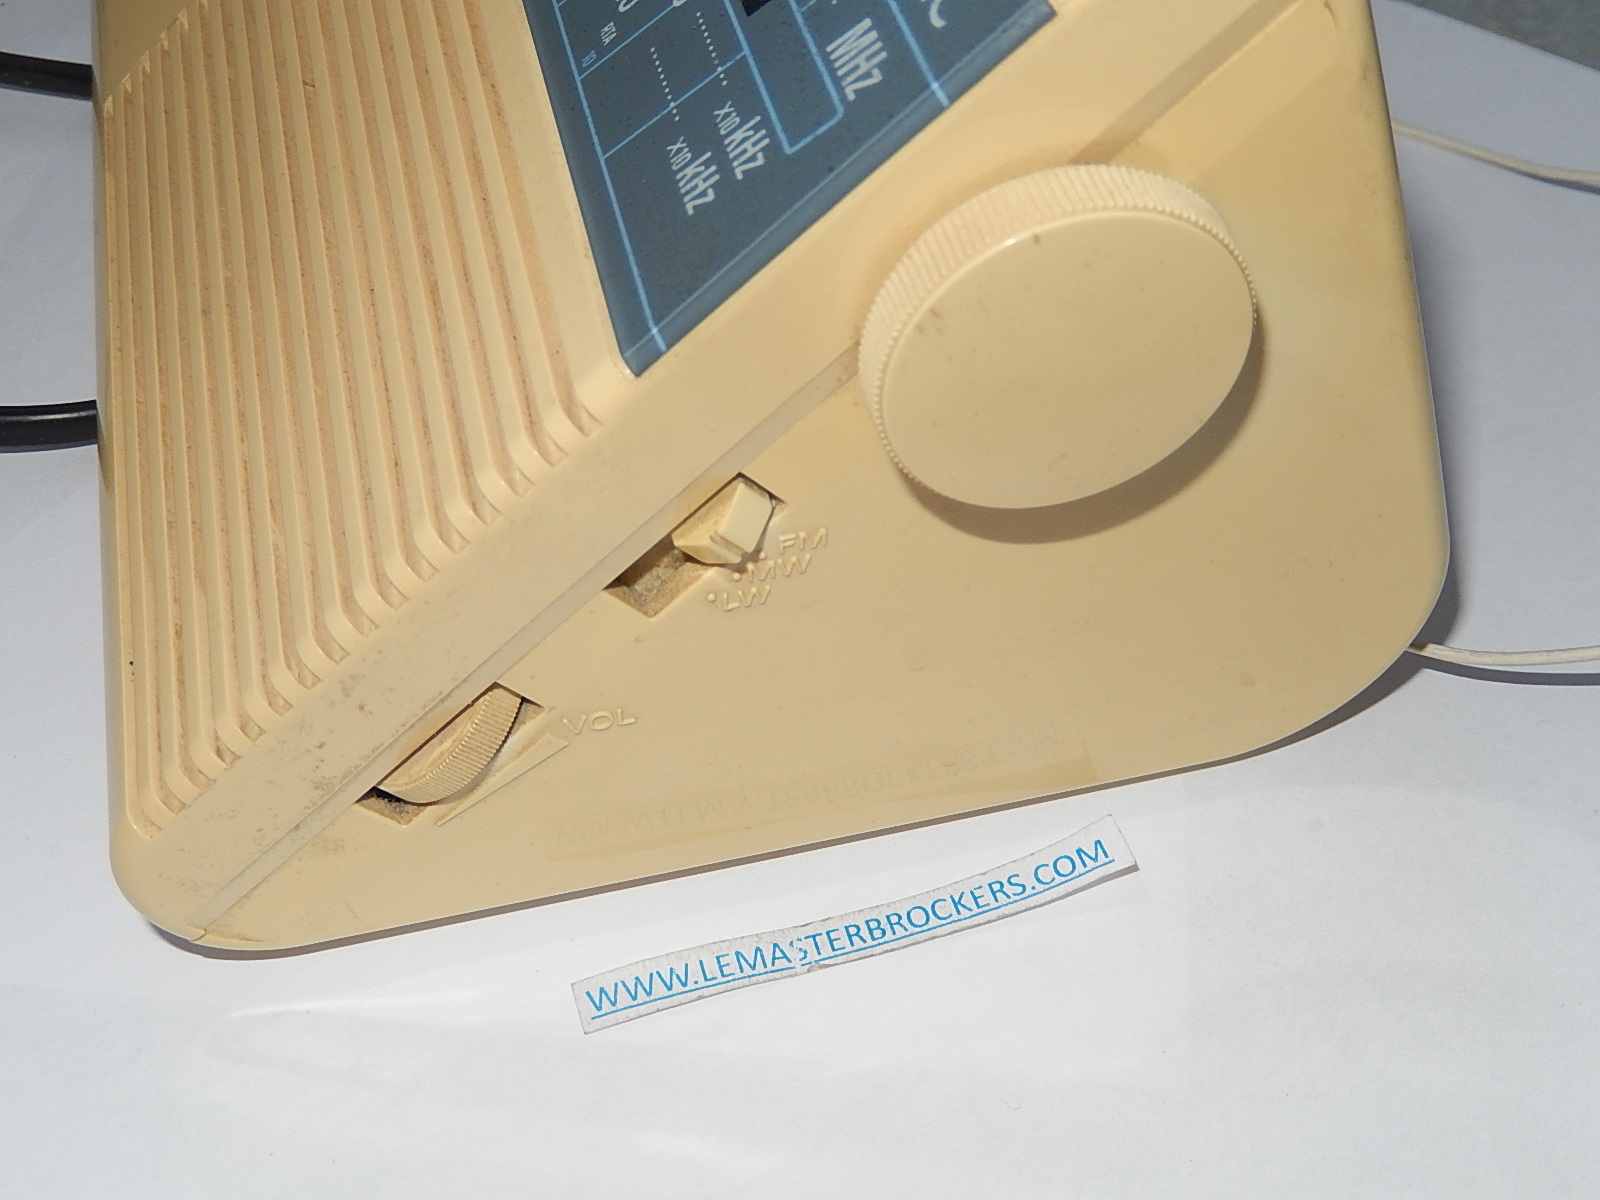 ② Radio-réveil numérique Sony Dream Machine type ICF-C303L — Réveils —  2ememain